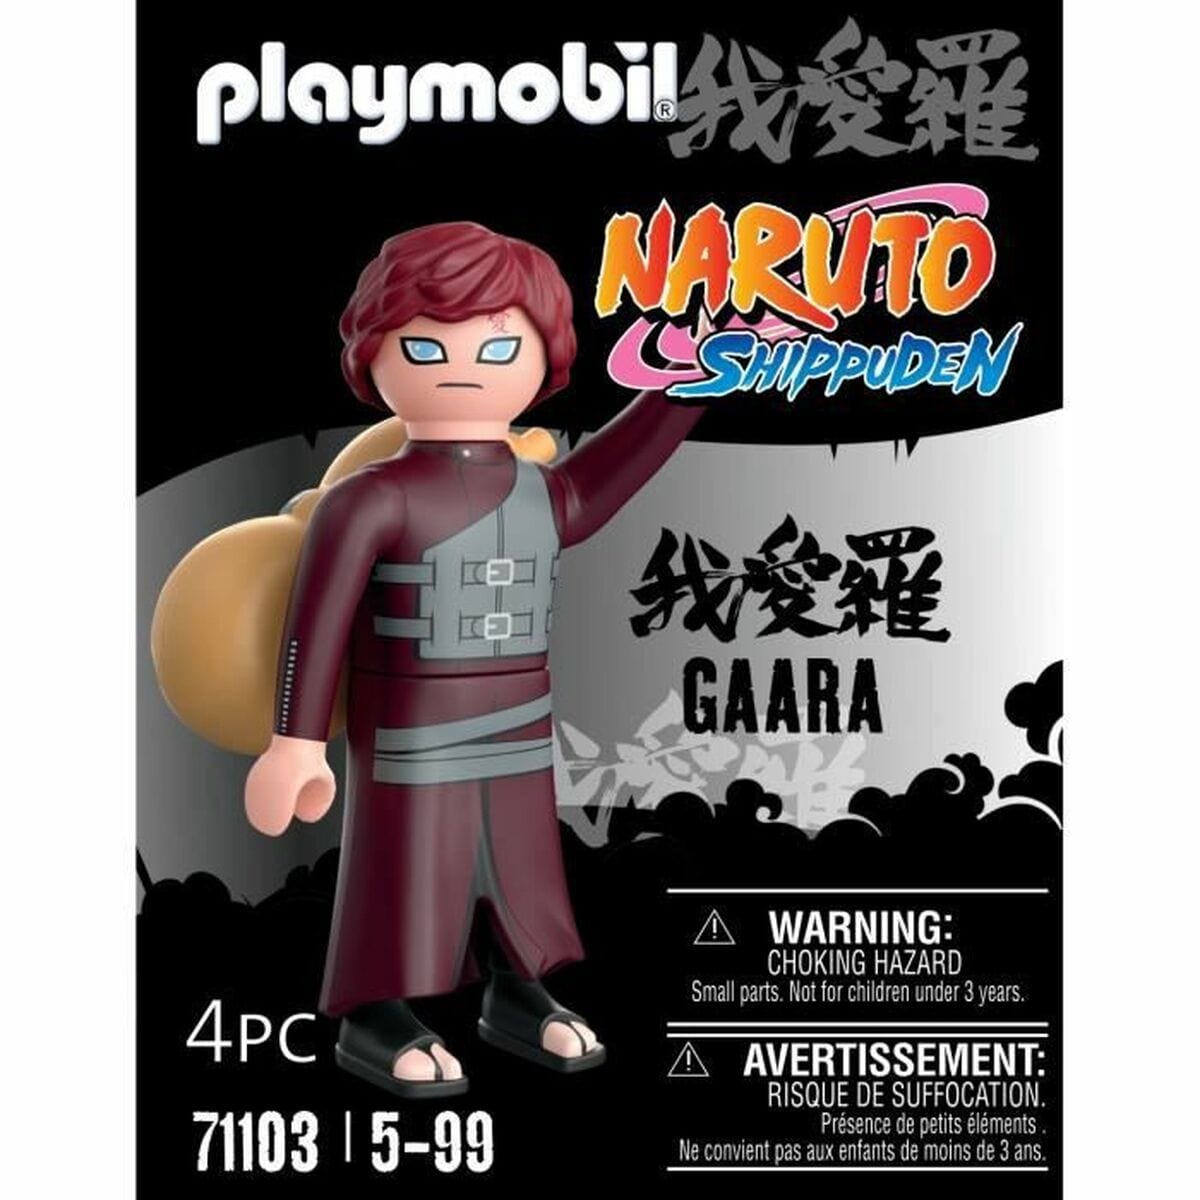 Playmobil Spielzeug | Kostüme > Spielzeug und Spiele > Action-Figuren Figur Playmobil Naruto Shippuden - Gaara 71103 4 Stücke